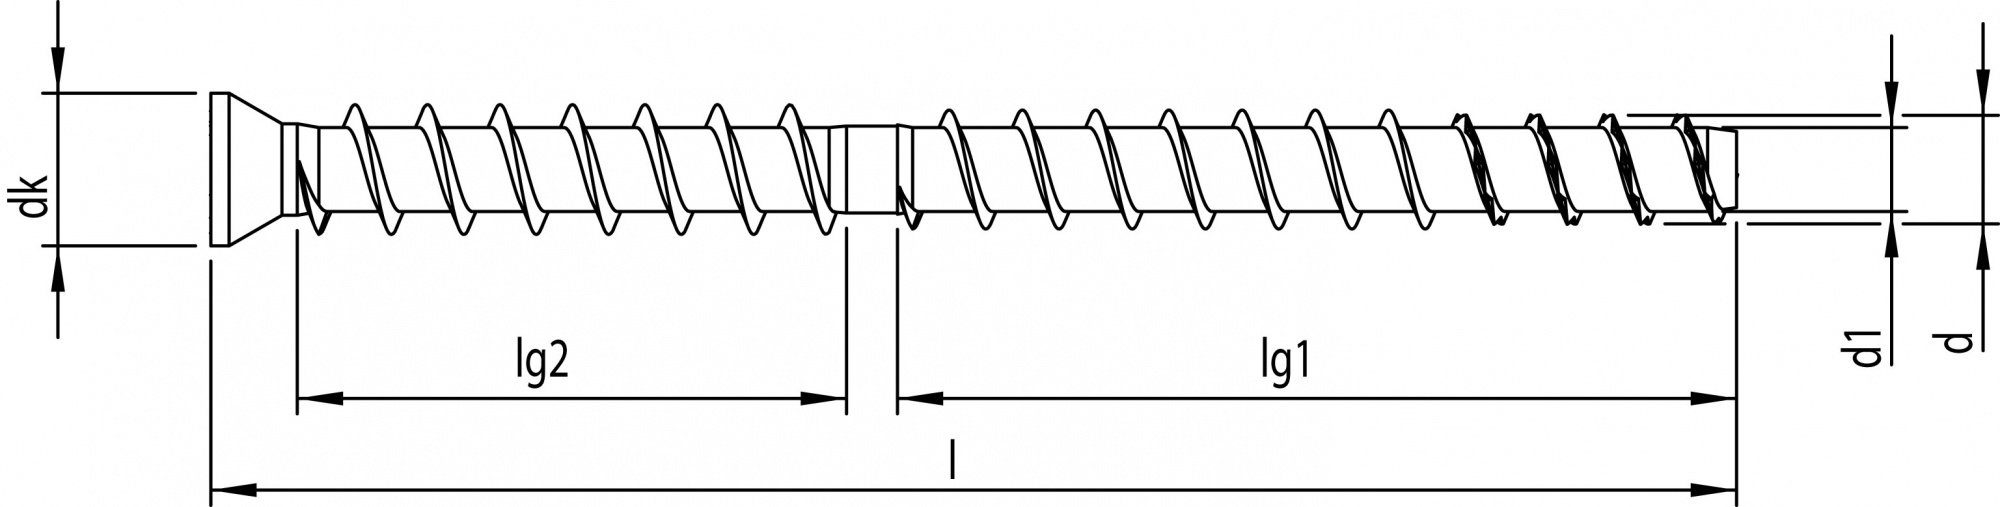 HECO Schrauben Betonschraube (12x160 mm, 25 MULTI-MONTI, verzinkt weiß St., Stahl TimberConnect)